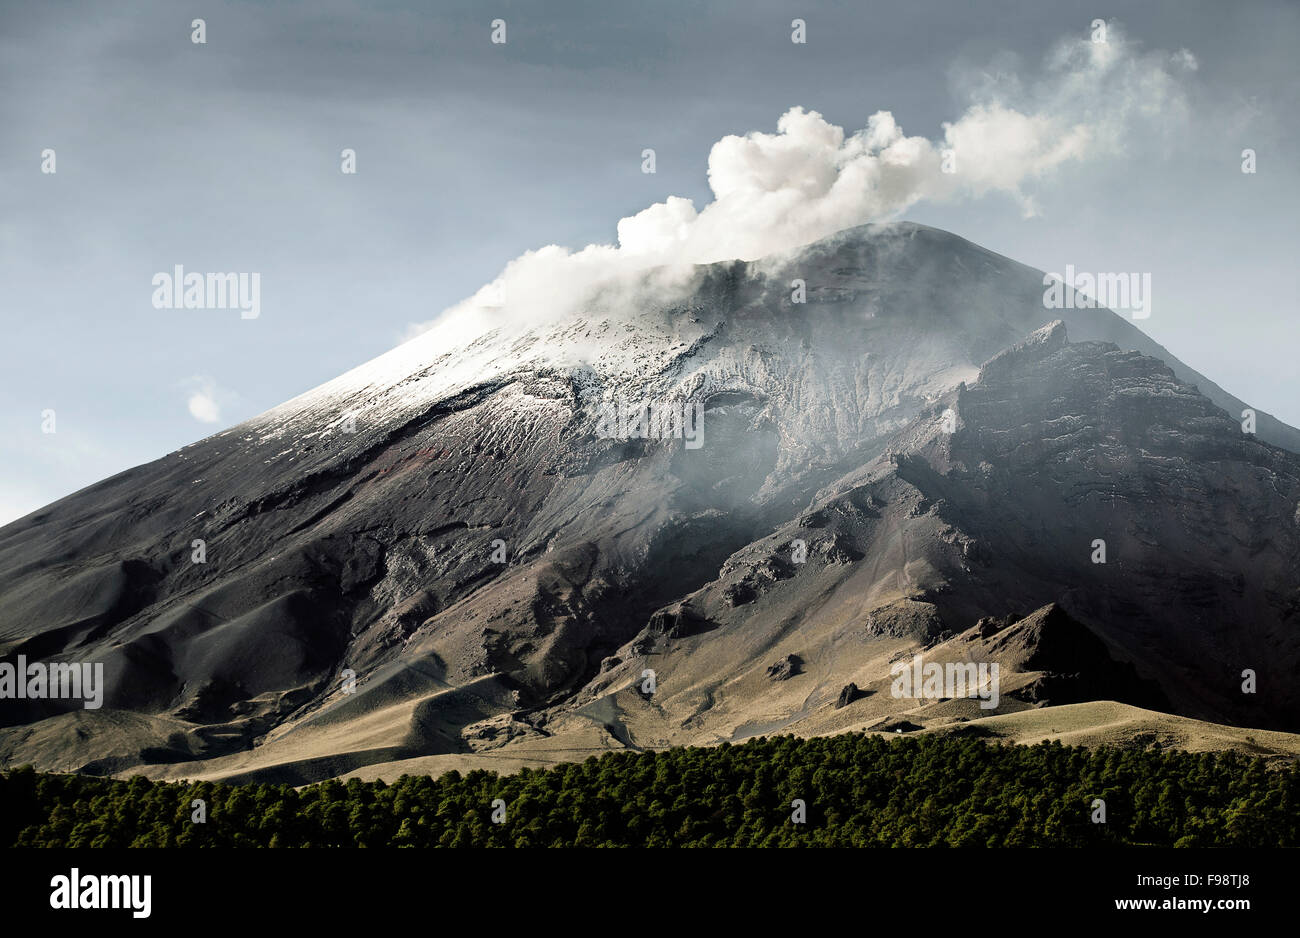 Smoke coming out from the crater of a volcano. Estado de Mexico, Mexico Stock Photo